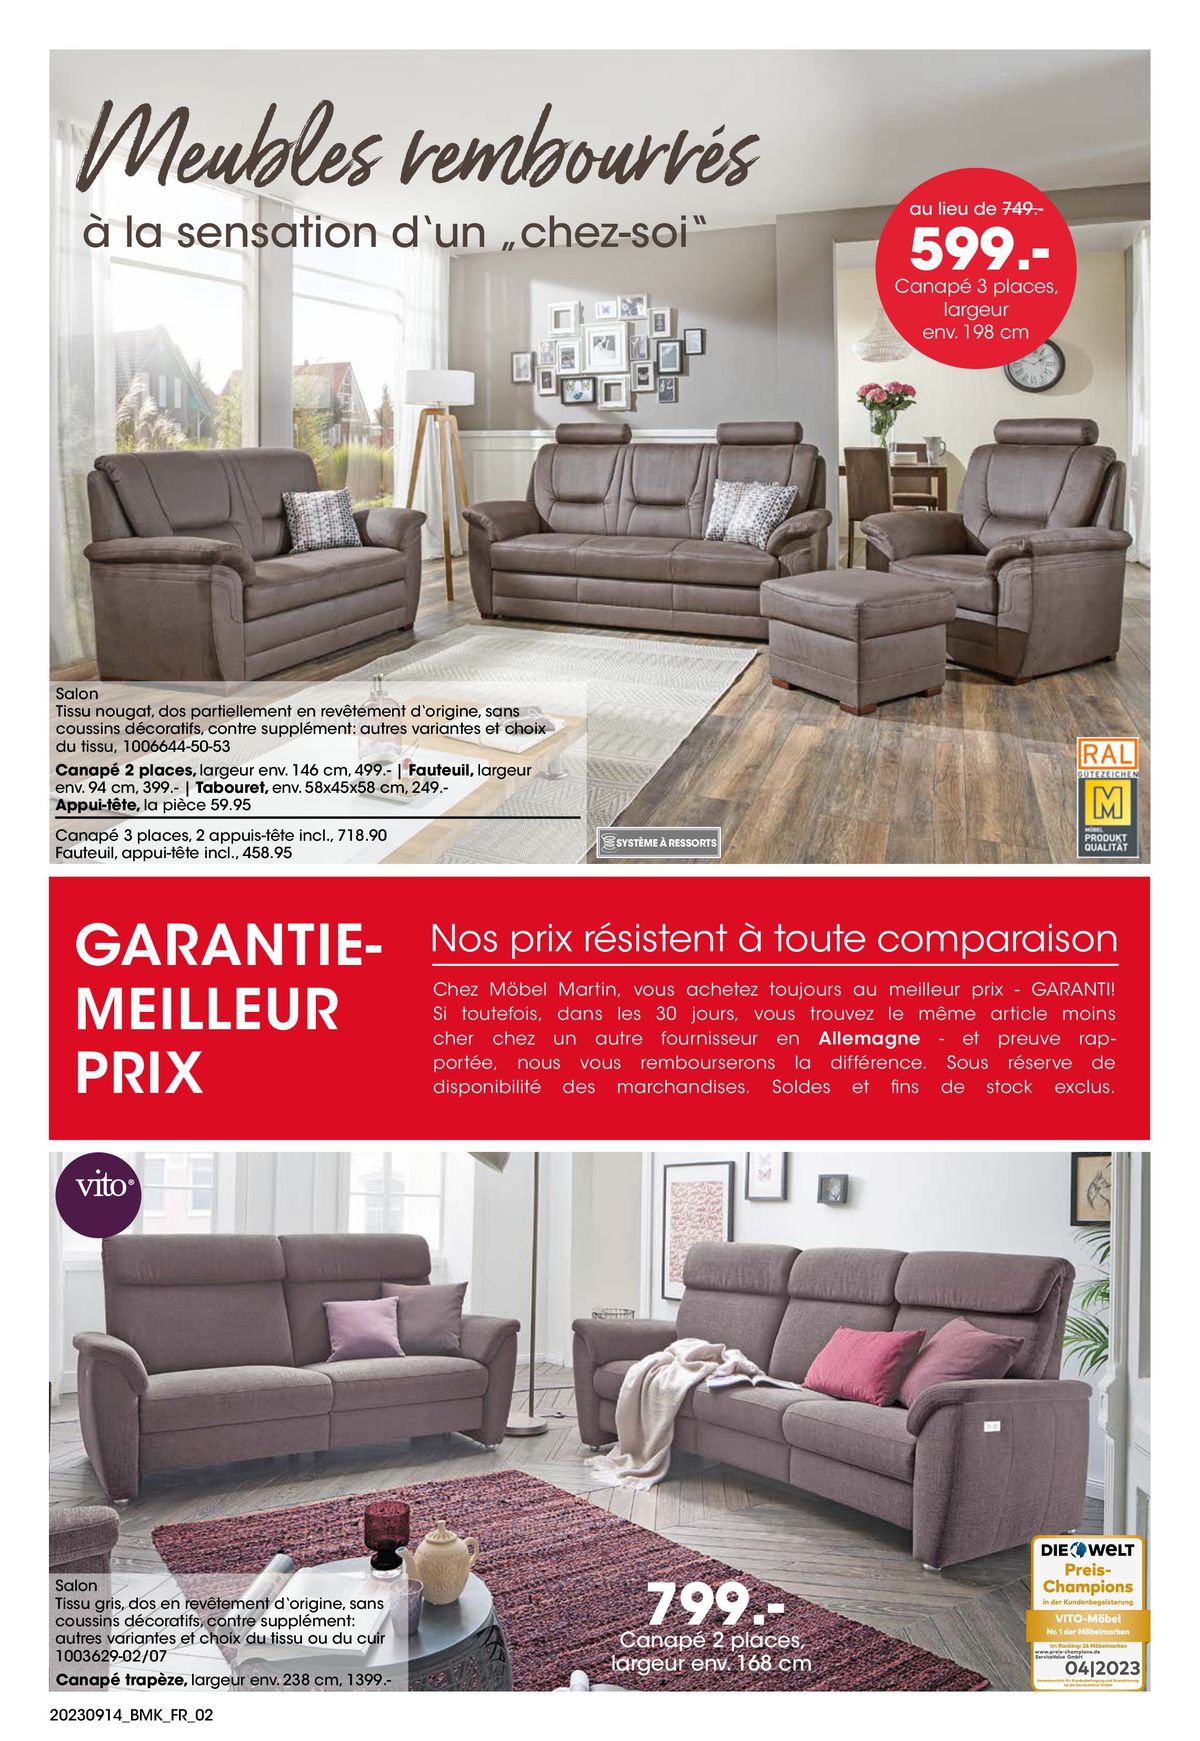 Catalogue Votre nouveau chez-vous avec GARANTIE-MEILLEUR PRIX, page 00002